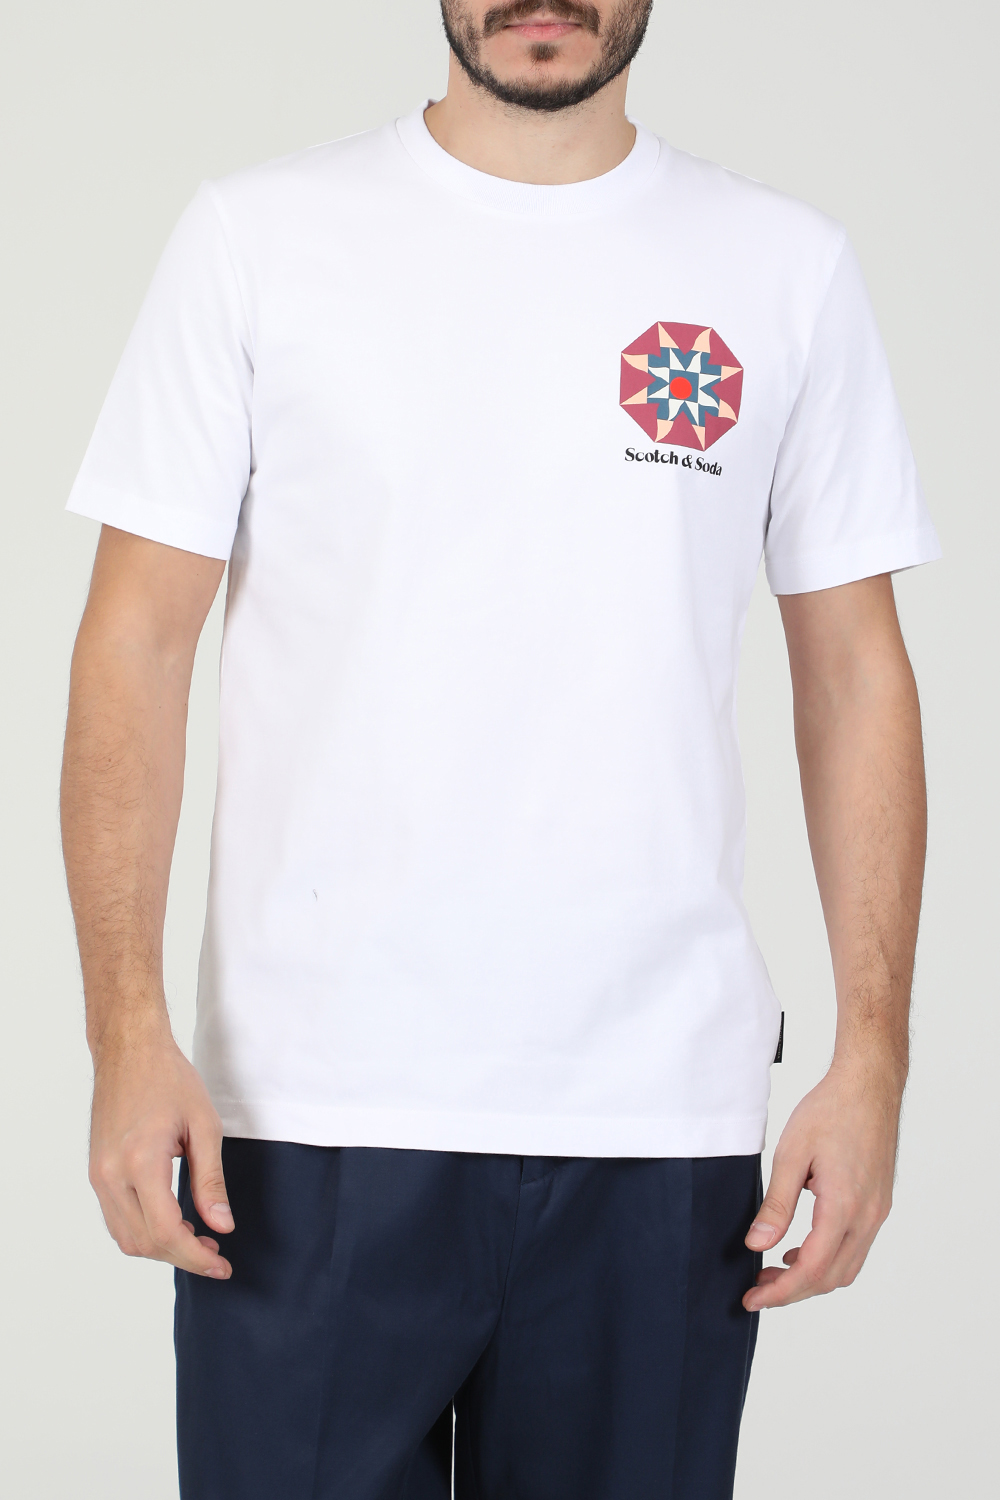 SCOTCH & SODA – Ανδρική κοντομάνικη μπλούζα SCOTCH & SODA λευκή 1821140.0-9292